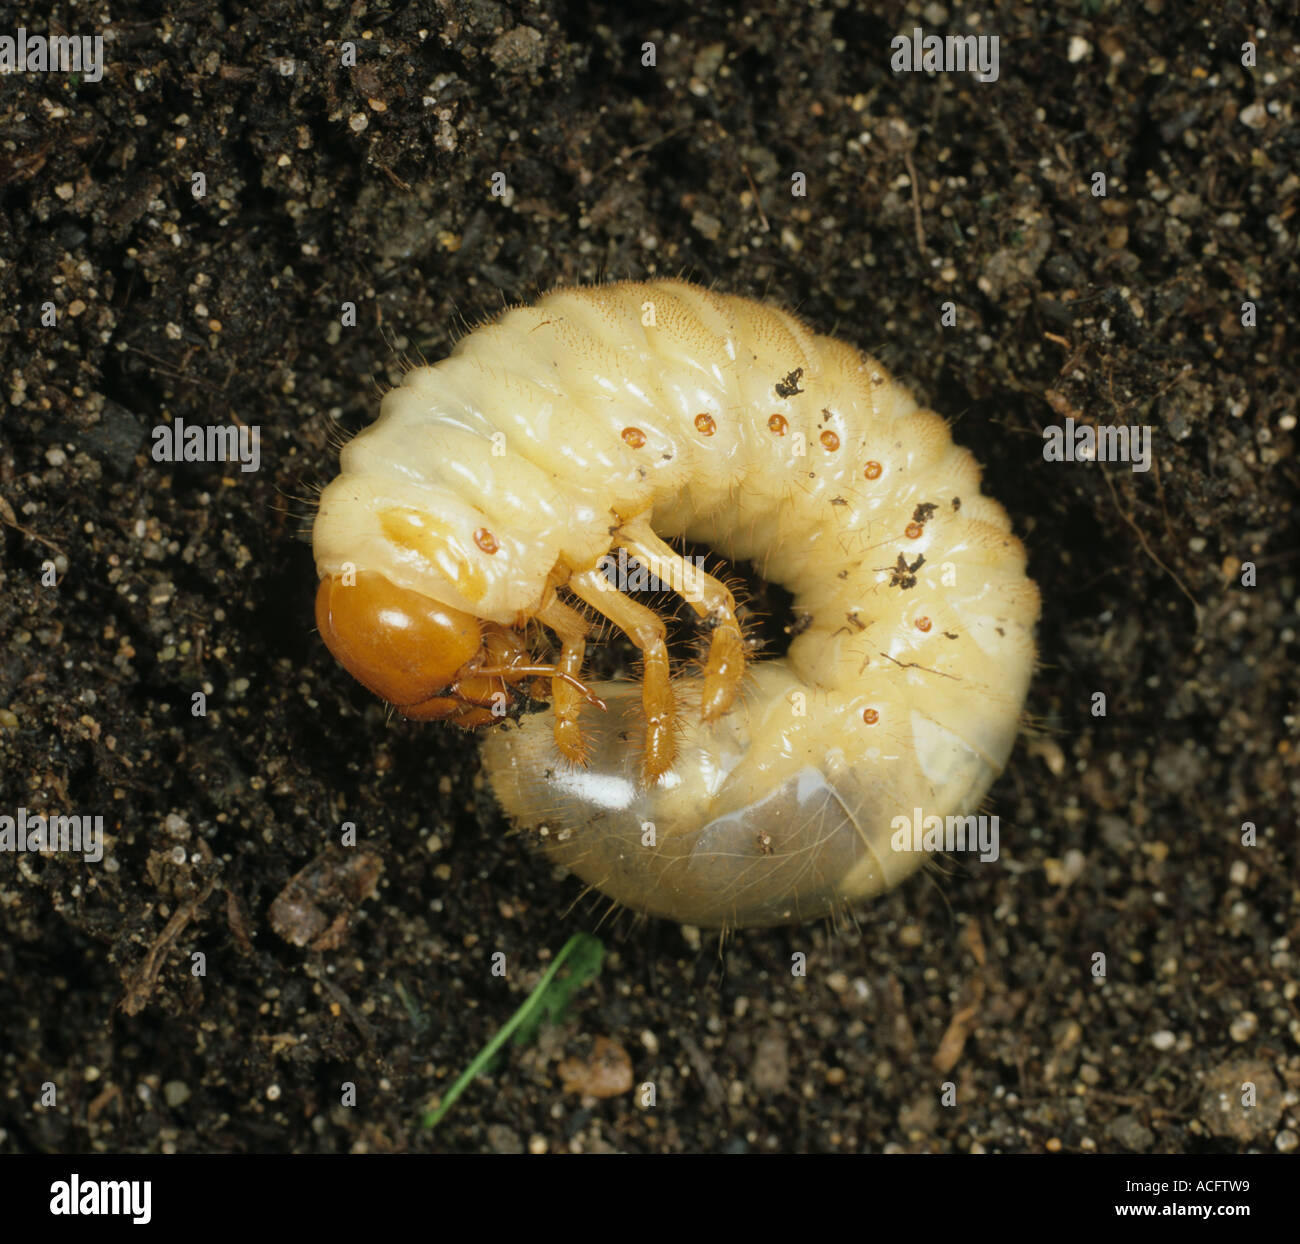 Europäische Maikäfer Melolontha Melolontha Larve grub auf Boden Stockfoto